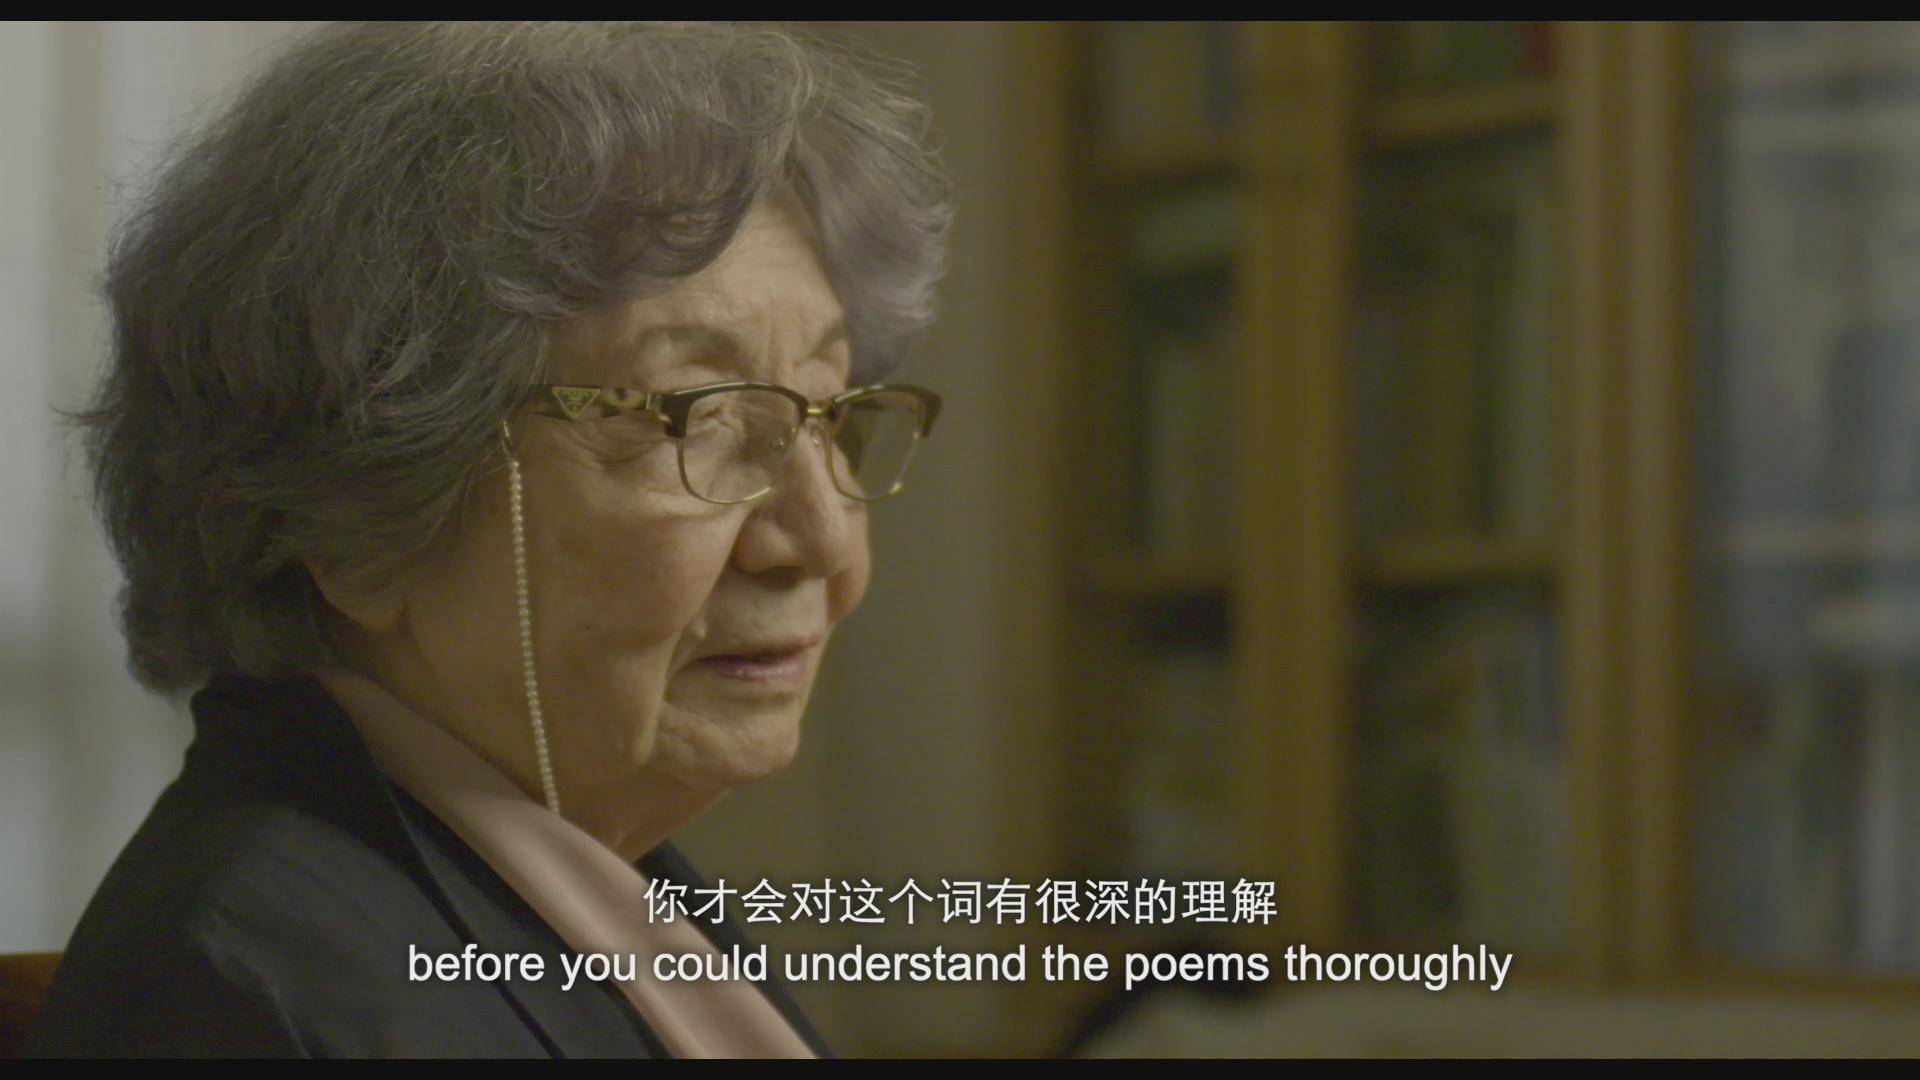 掬水月在手 参赛上海电影节 交织叶嘉莹个人生命和千年中国古典诗词